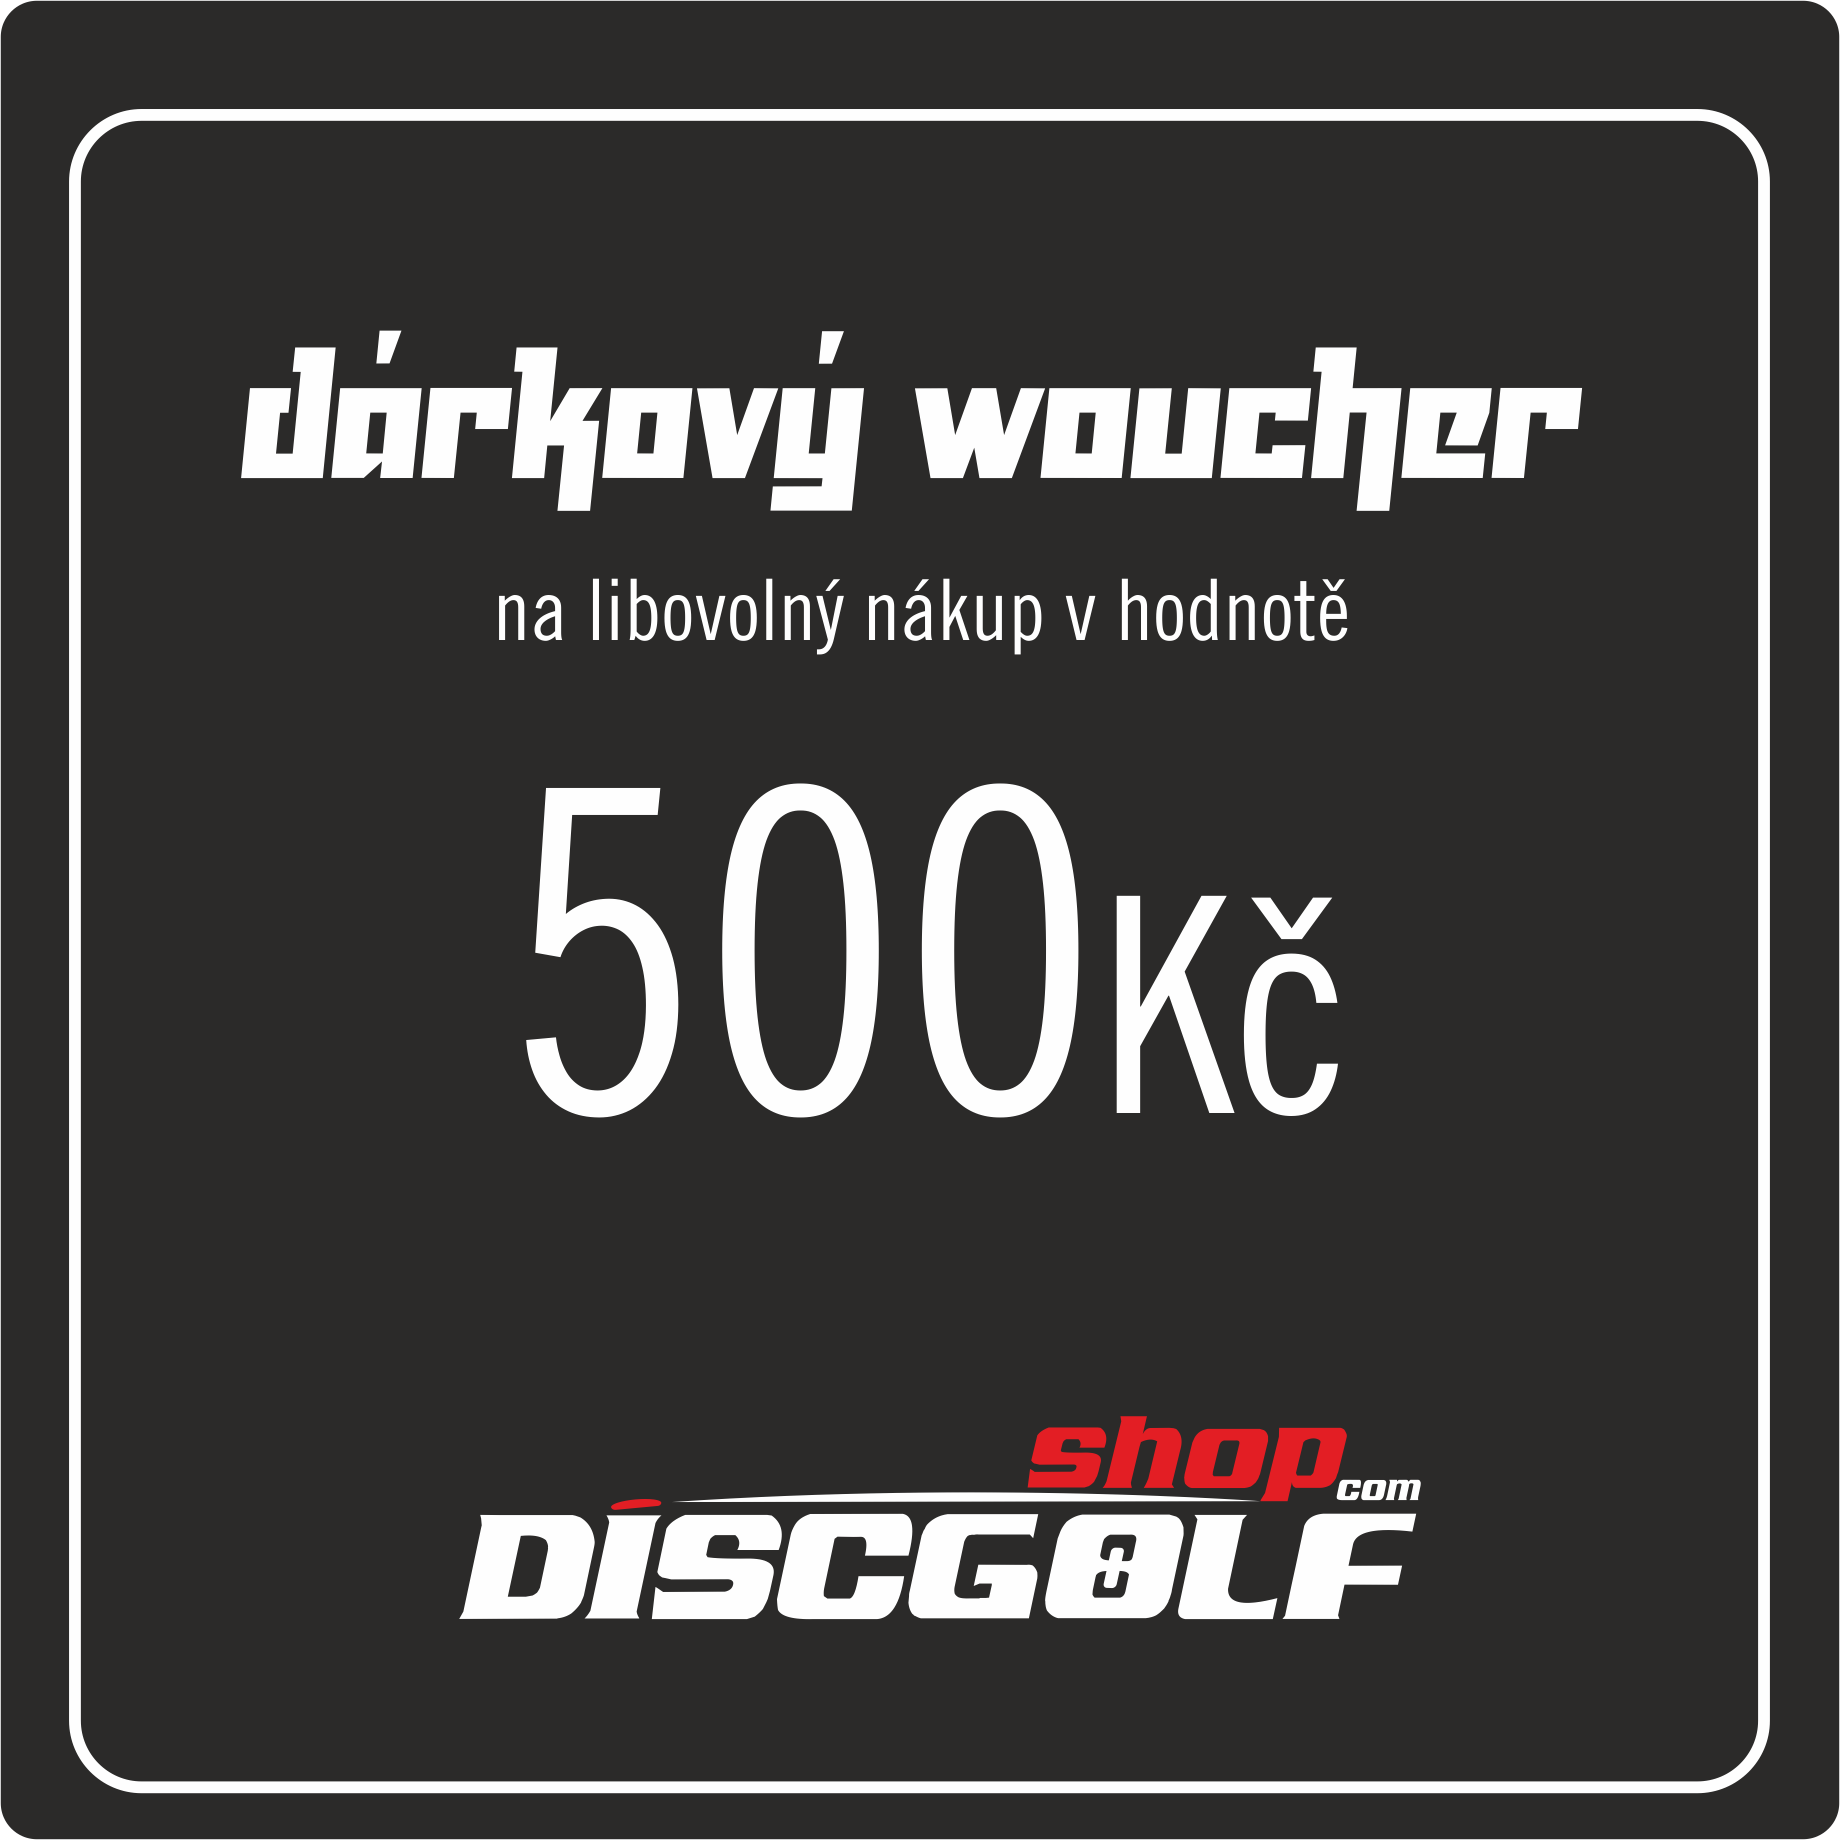       Dárkový woucher - kupon 500Kč